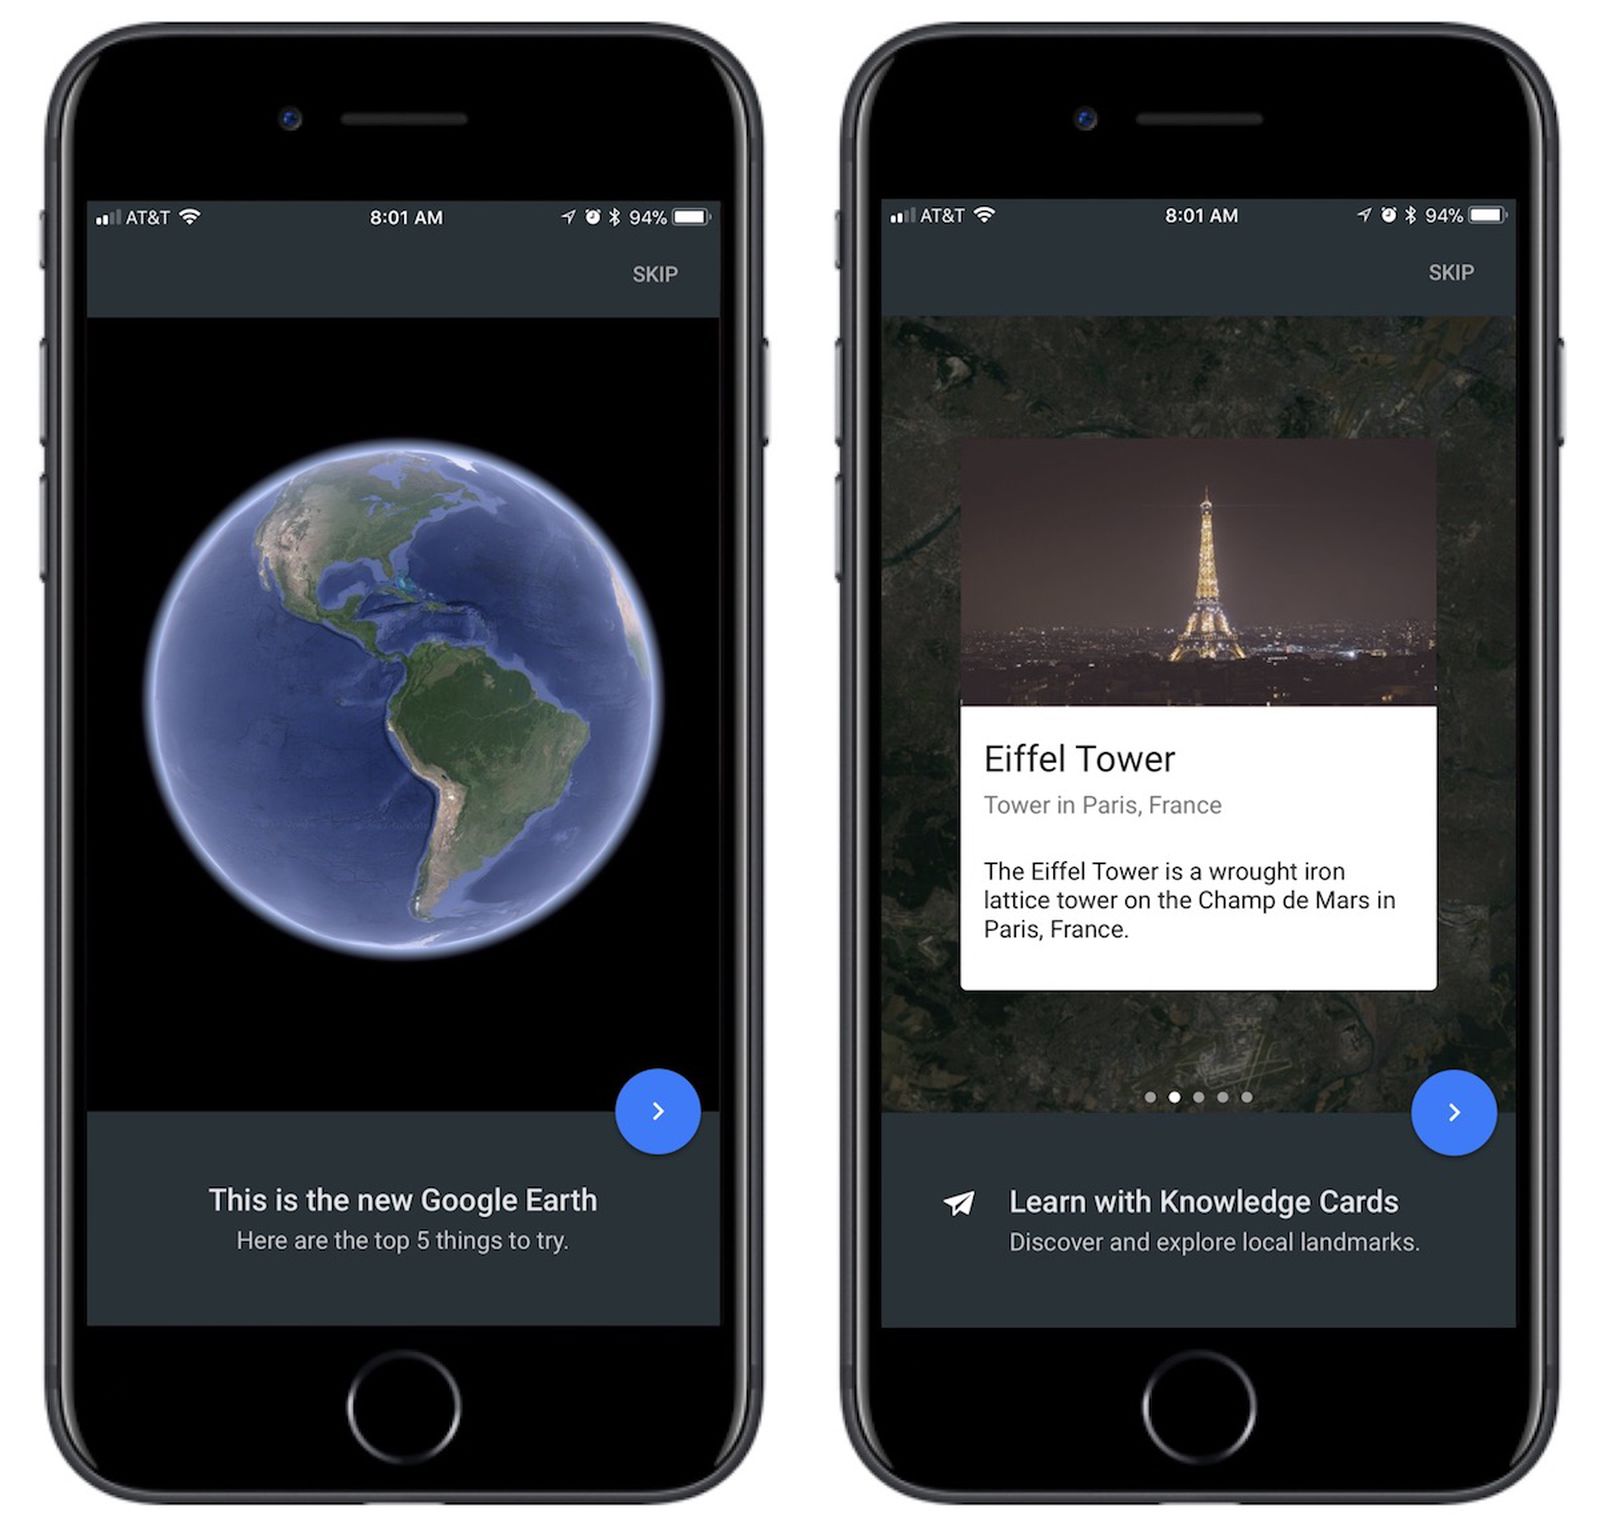 Загрузить гугл на айфон. Приложение гугл земля для IOS. Google iphone. Google Earth CAPCUT приложение IOS. Есть ли гугл на айфоне.